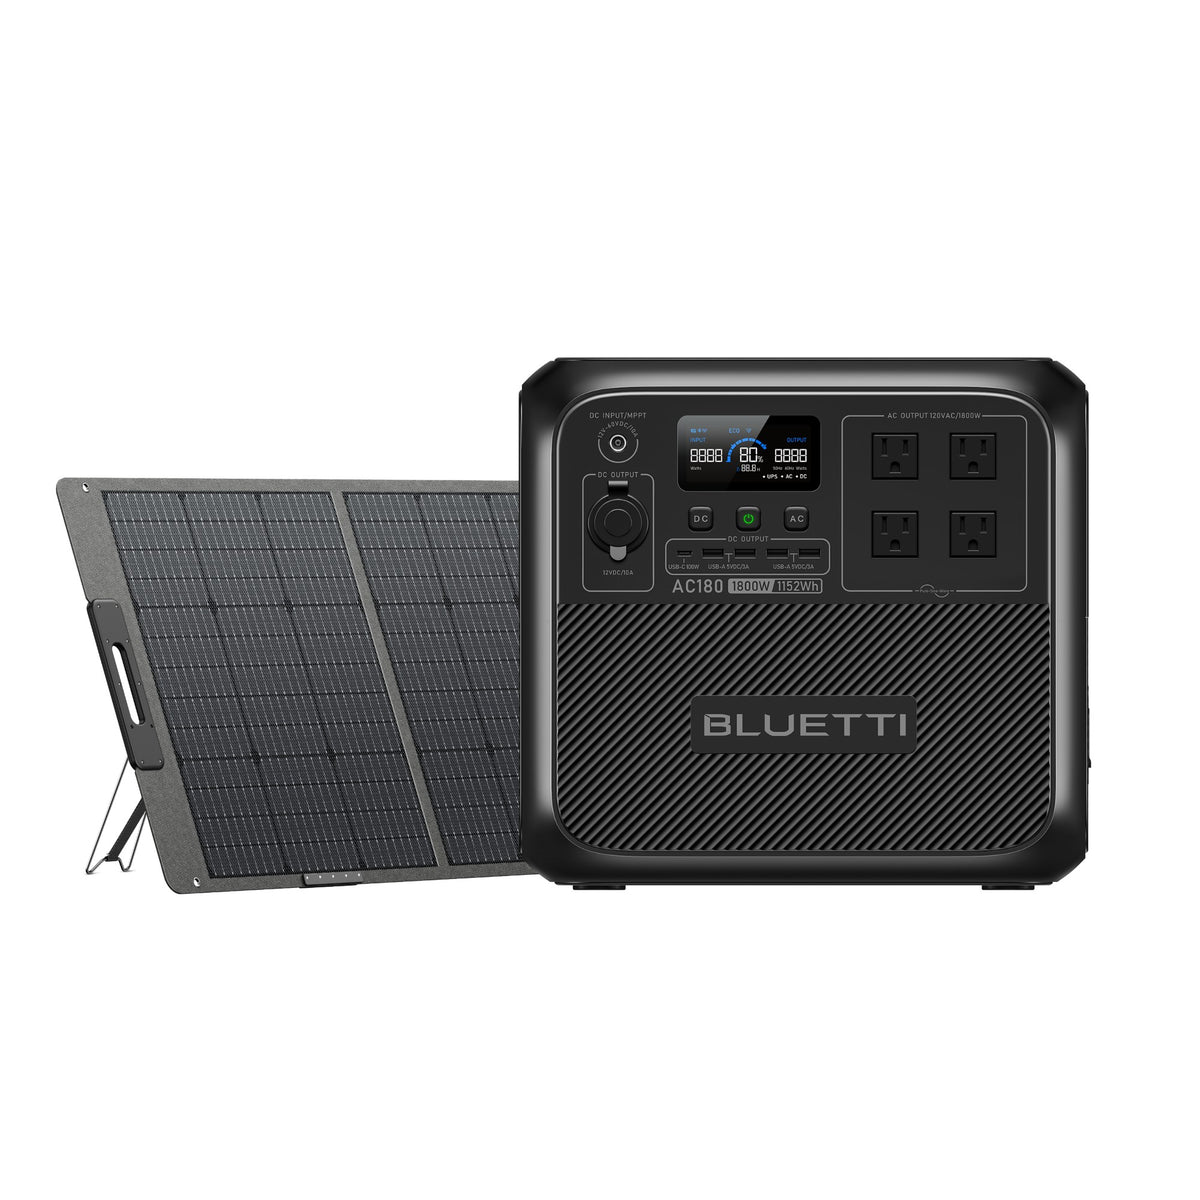 BLUETTI AC180 Debut in Australia to Hit A Milestone in Portable Power